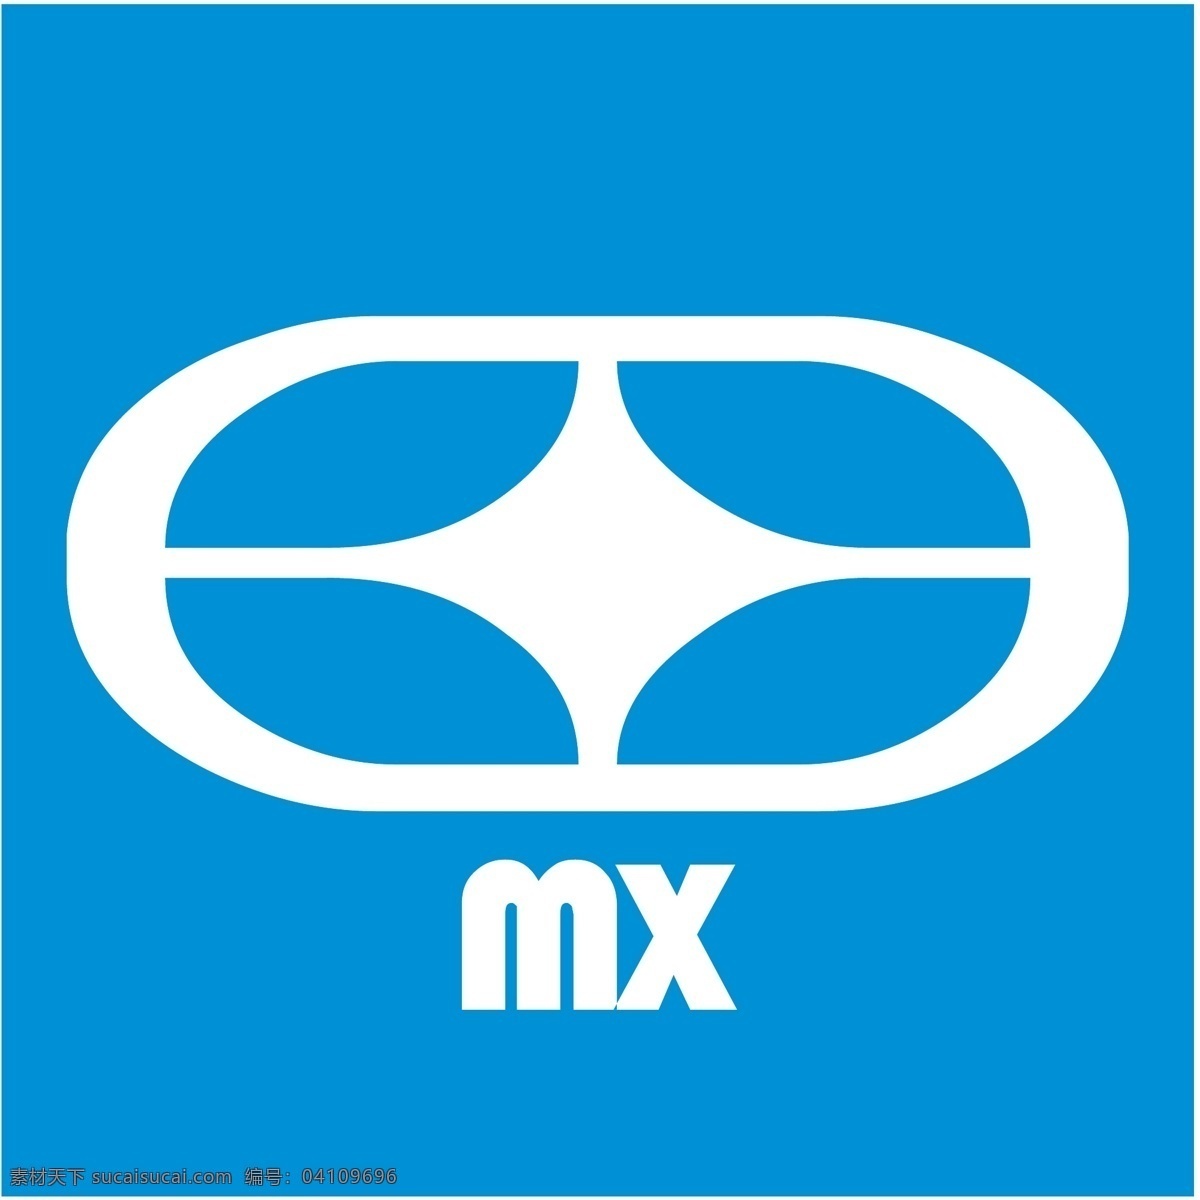 没有 恐惧 mx 标识 公司 免费 品牌 品牌标识 商标 矢量标志下载 免费矢量标识 矢量 psd源文件 logo设计